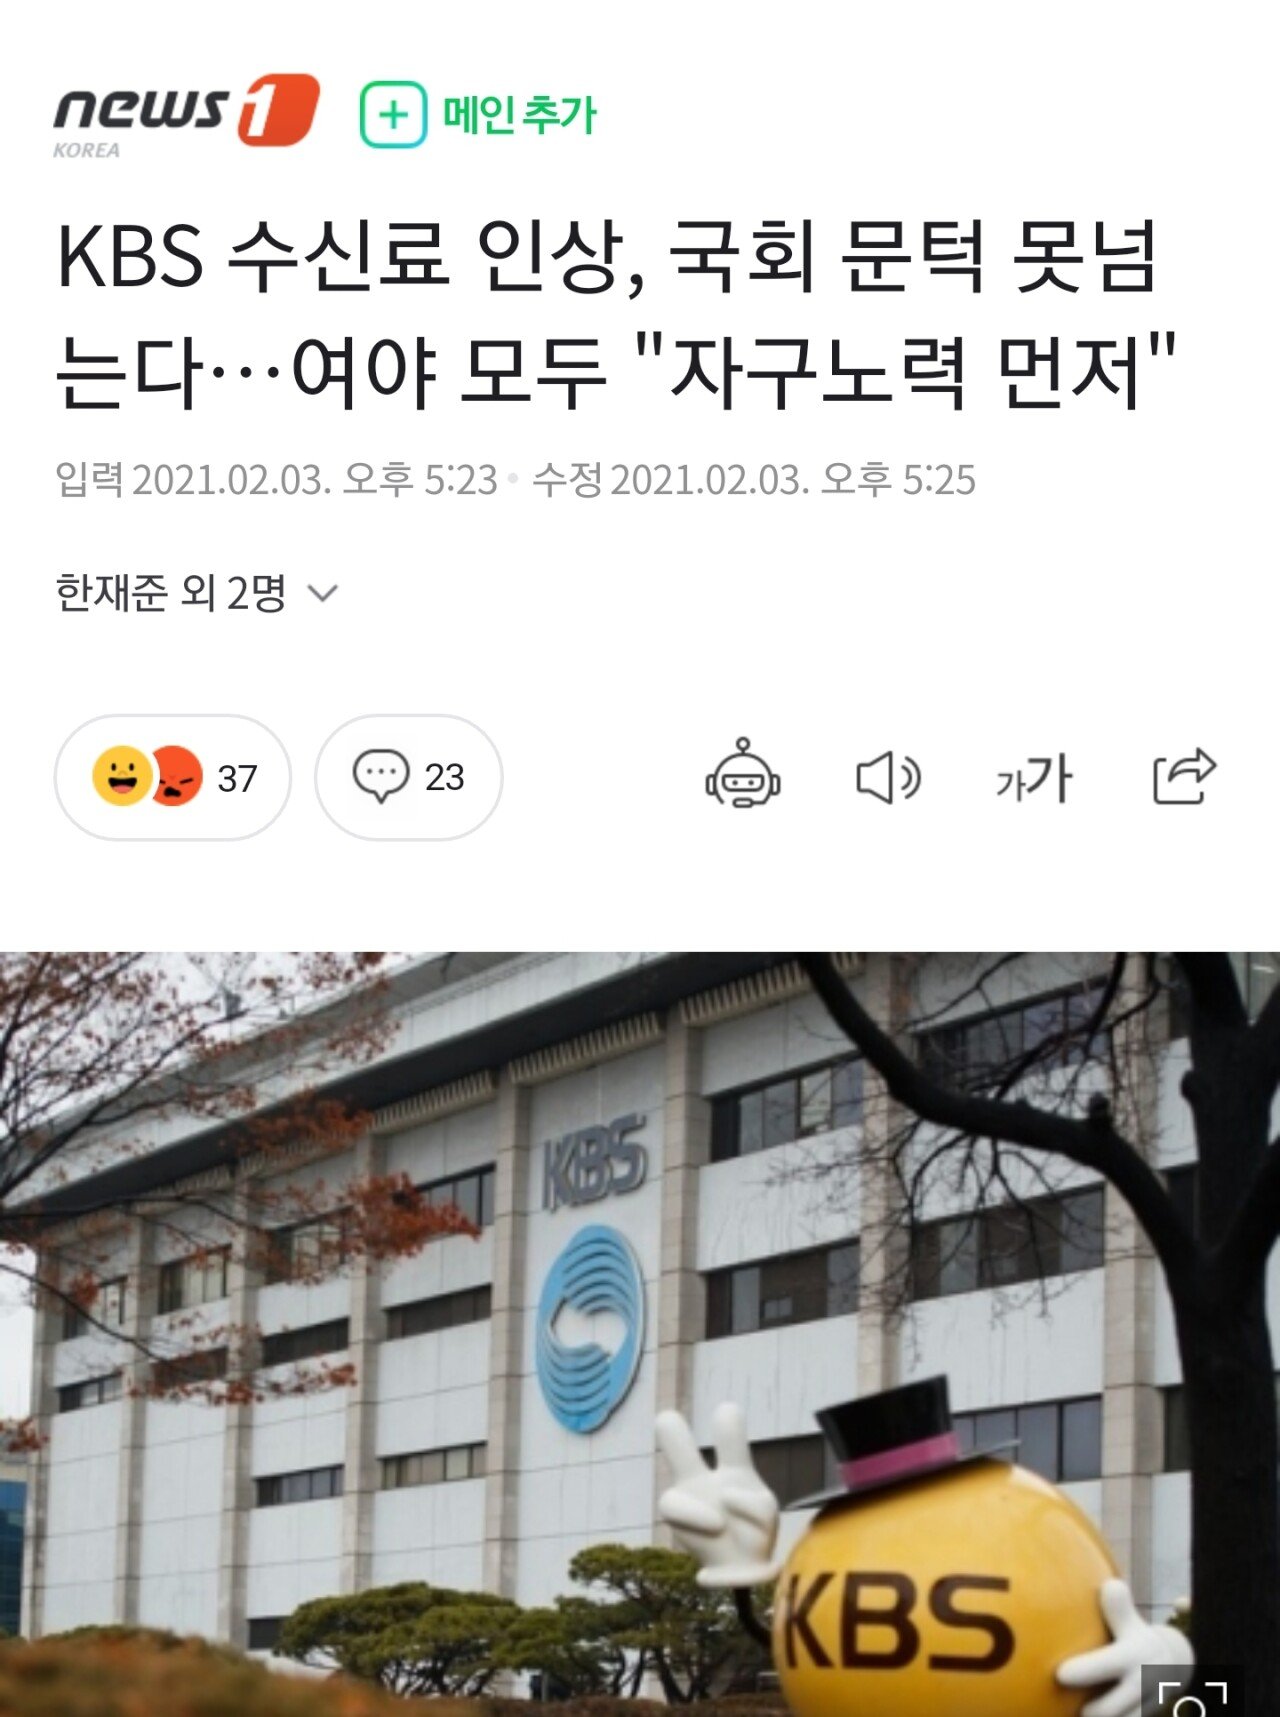 KBS 블라인드 스노우볼 feat, 수신료다크나이트